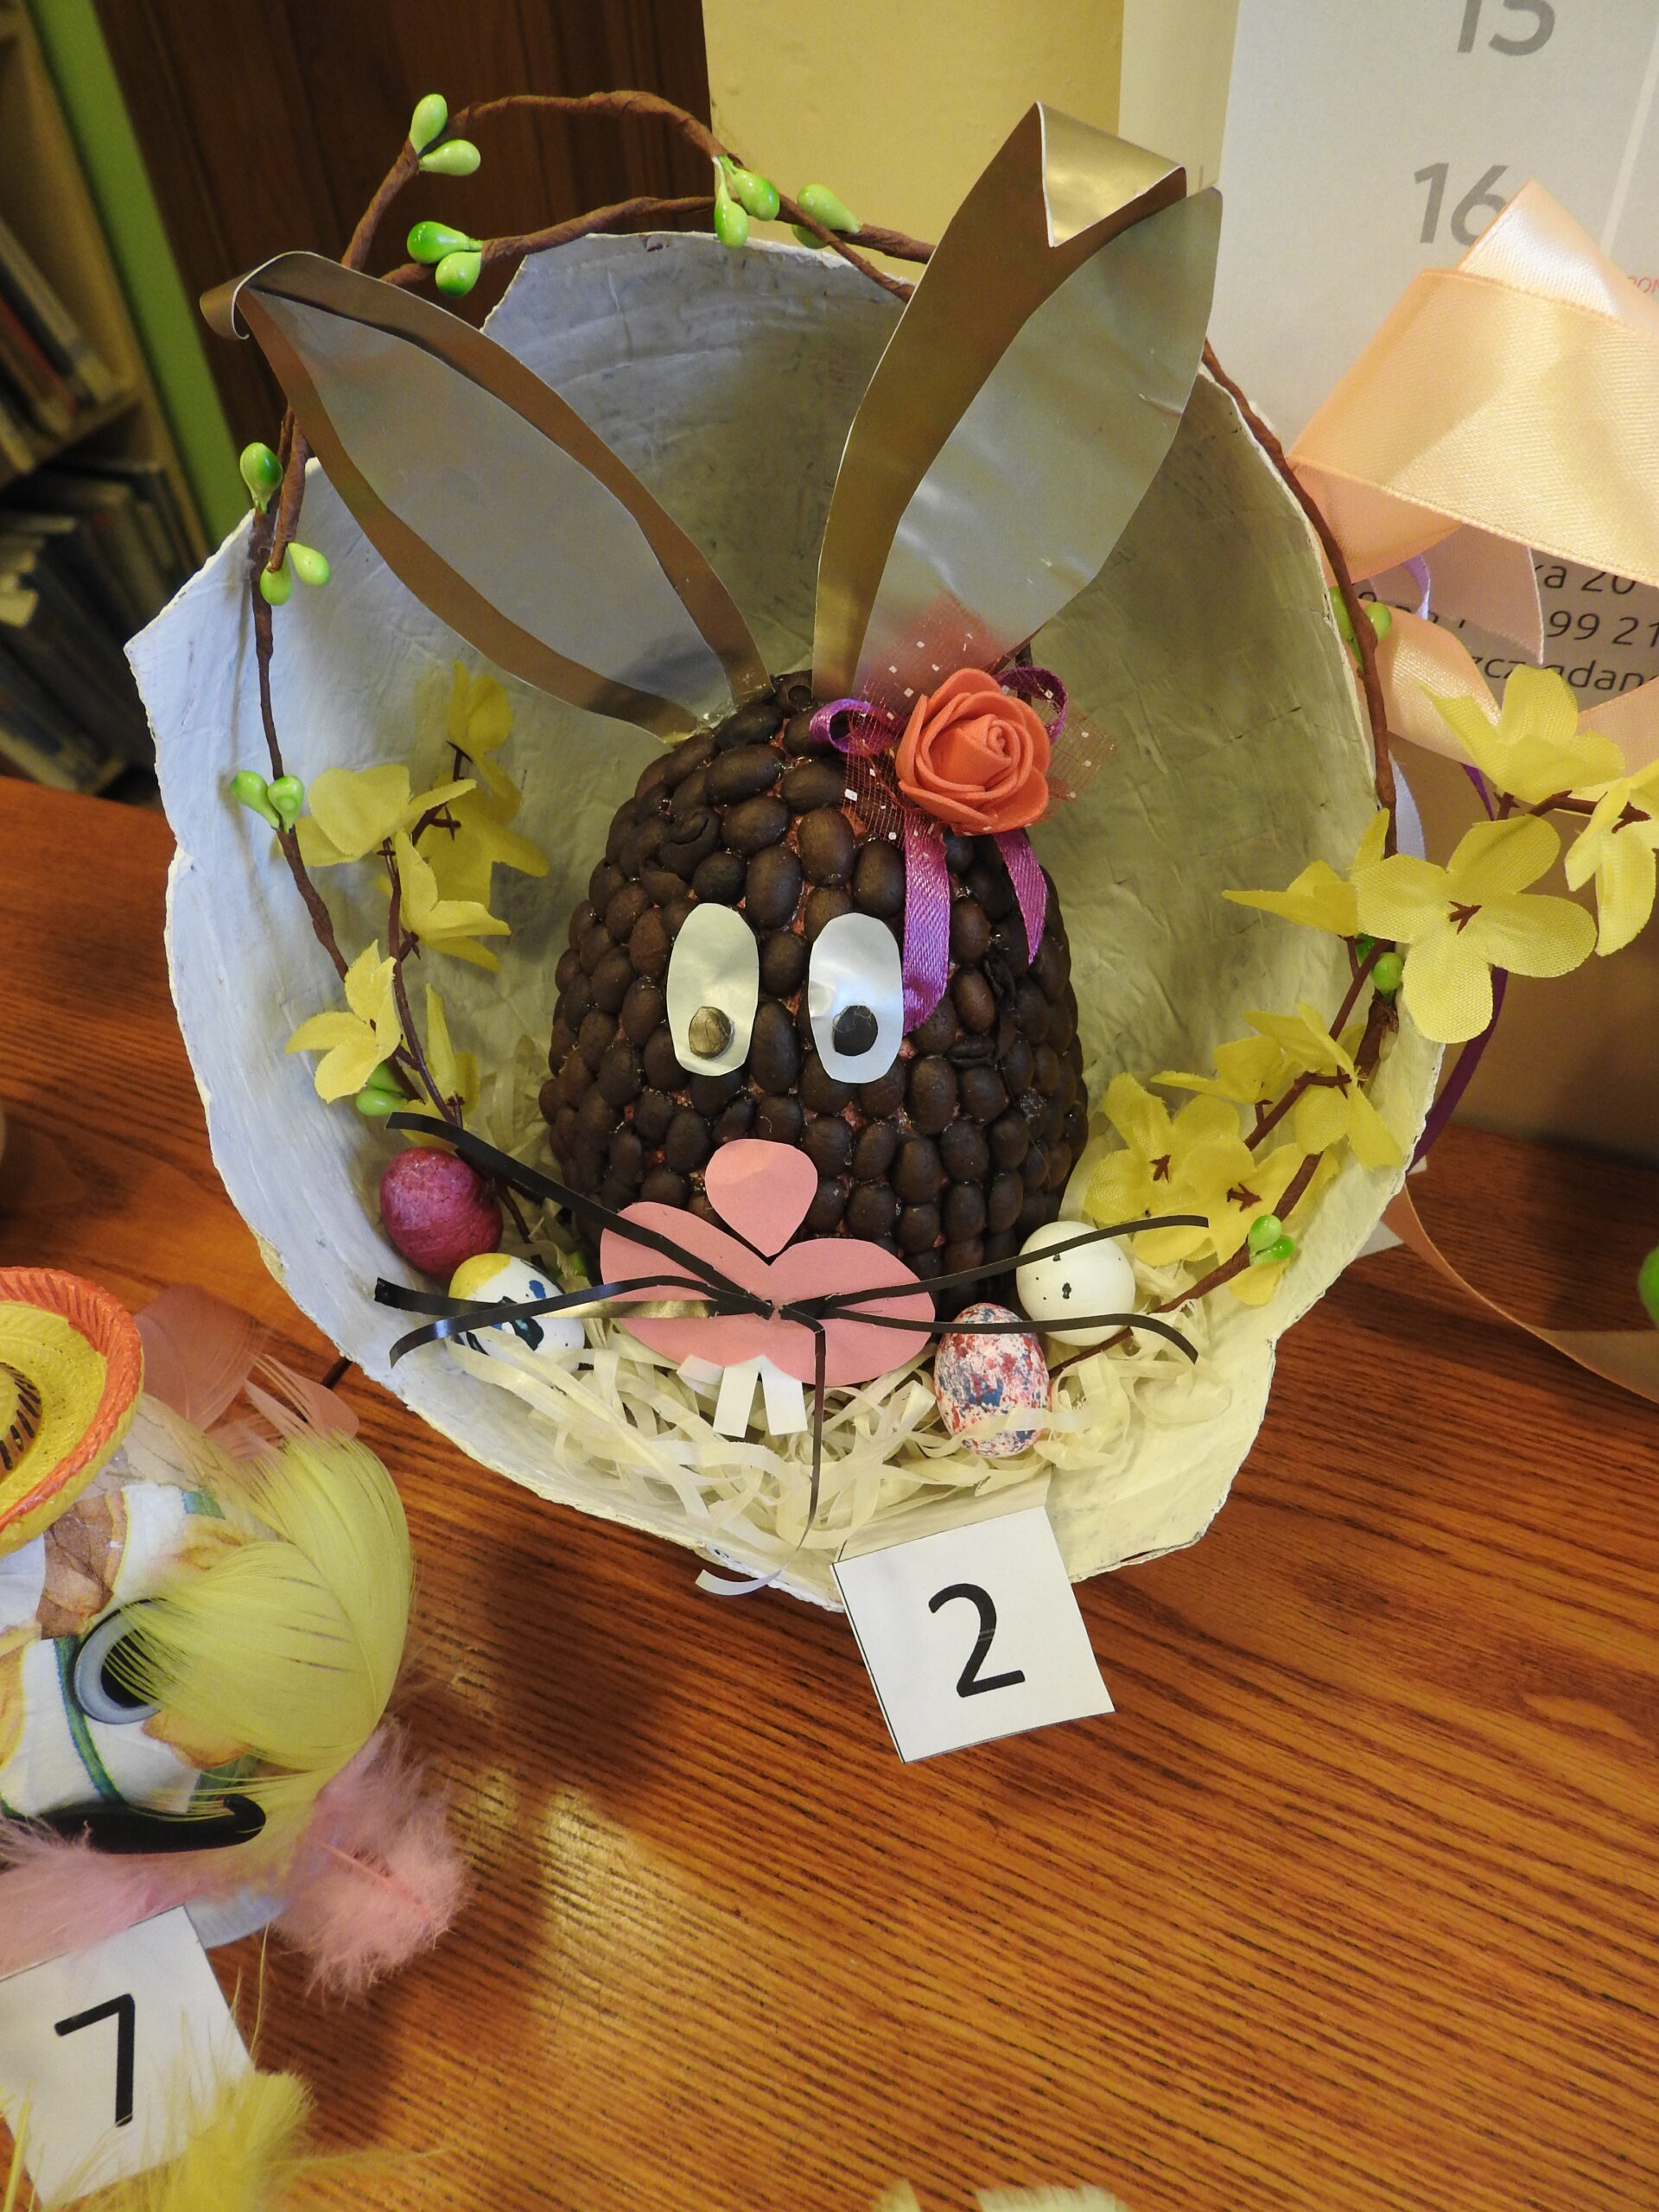 Pisanka w formie zajączka: jajo oklejone ziarenkami kawy, doklejone papierowe uszy,. Całośc umieszczona w otwartm kole, ozodobiona sztucznymi kwiatkami, jajeczkami.